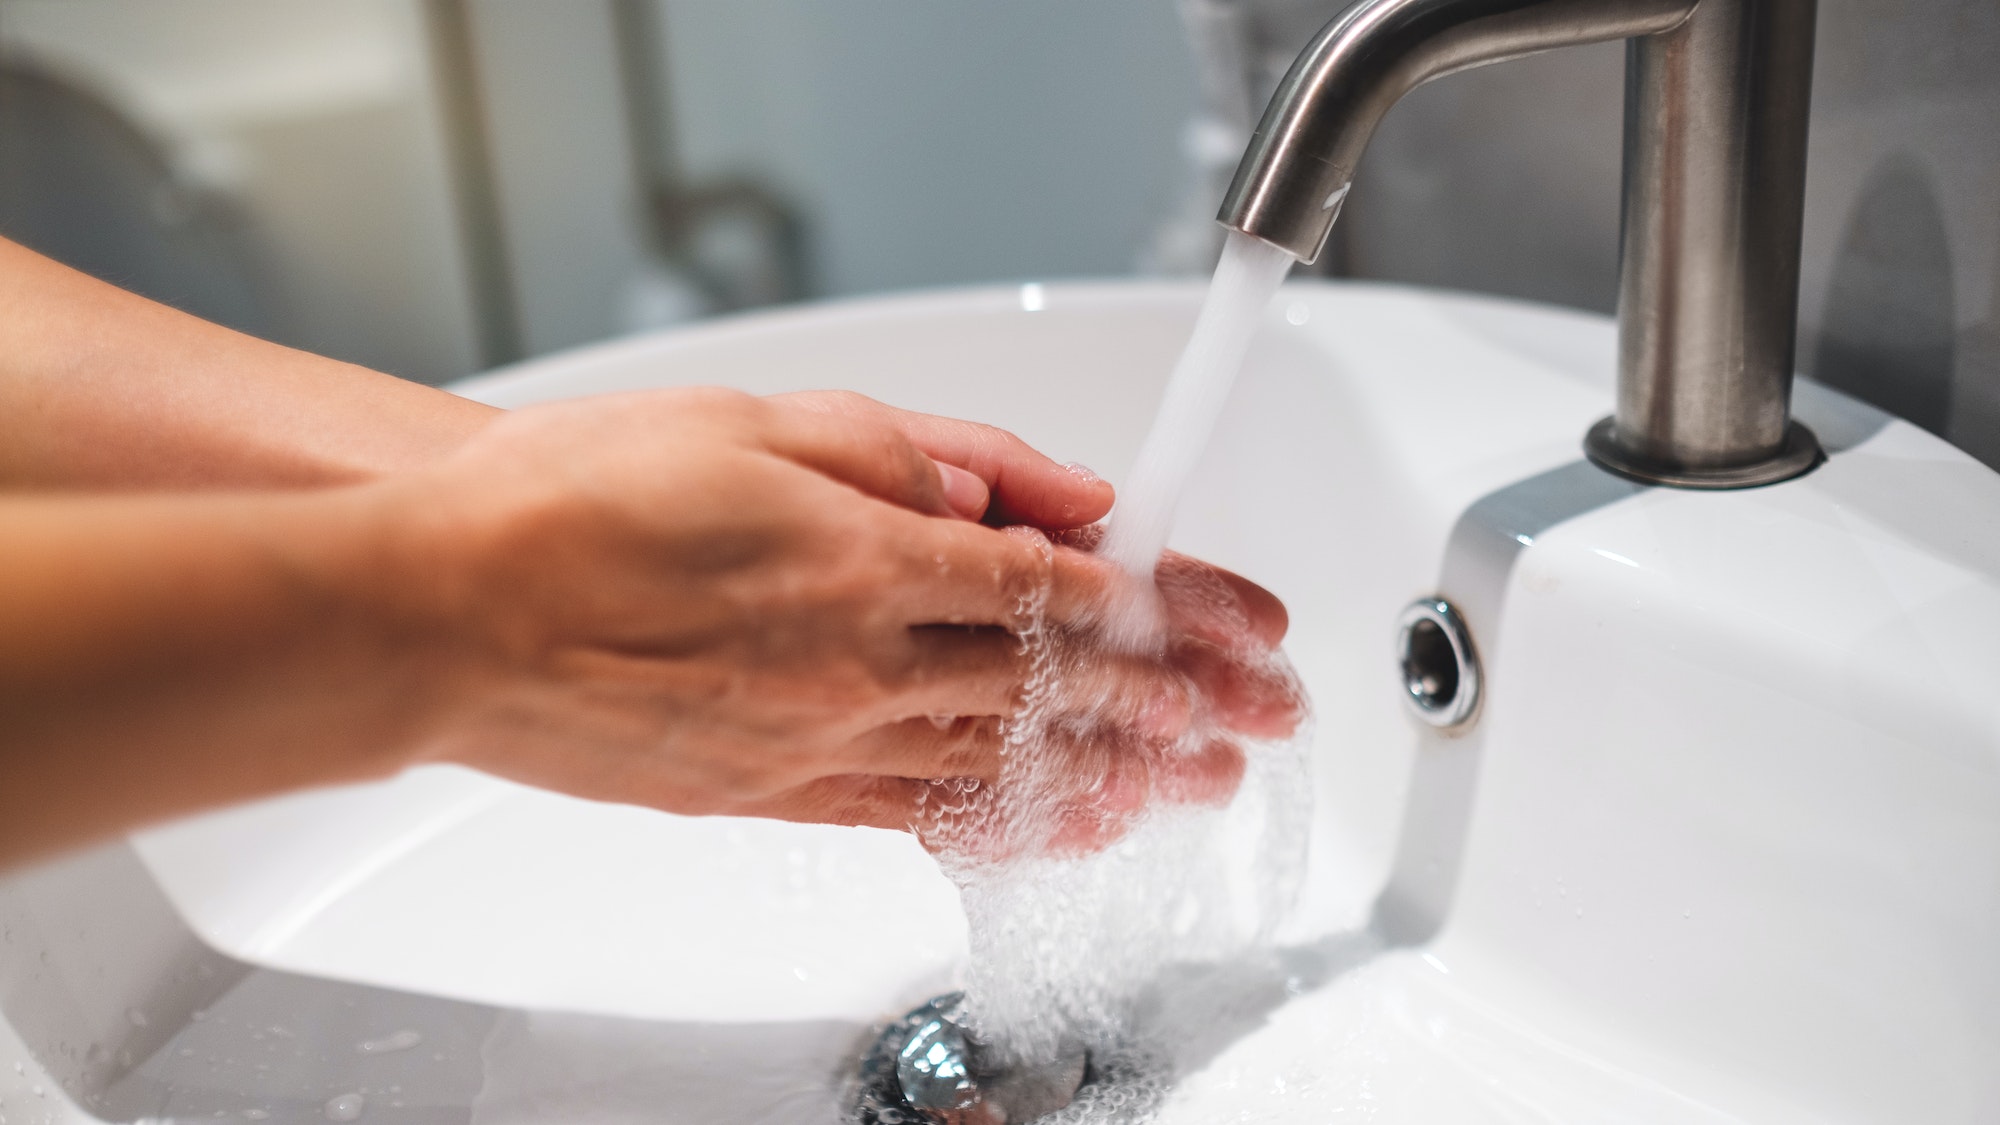 Frau putzt und wäscht sich die Hände unter dem Wasserhahn im Badezimmer